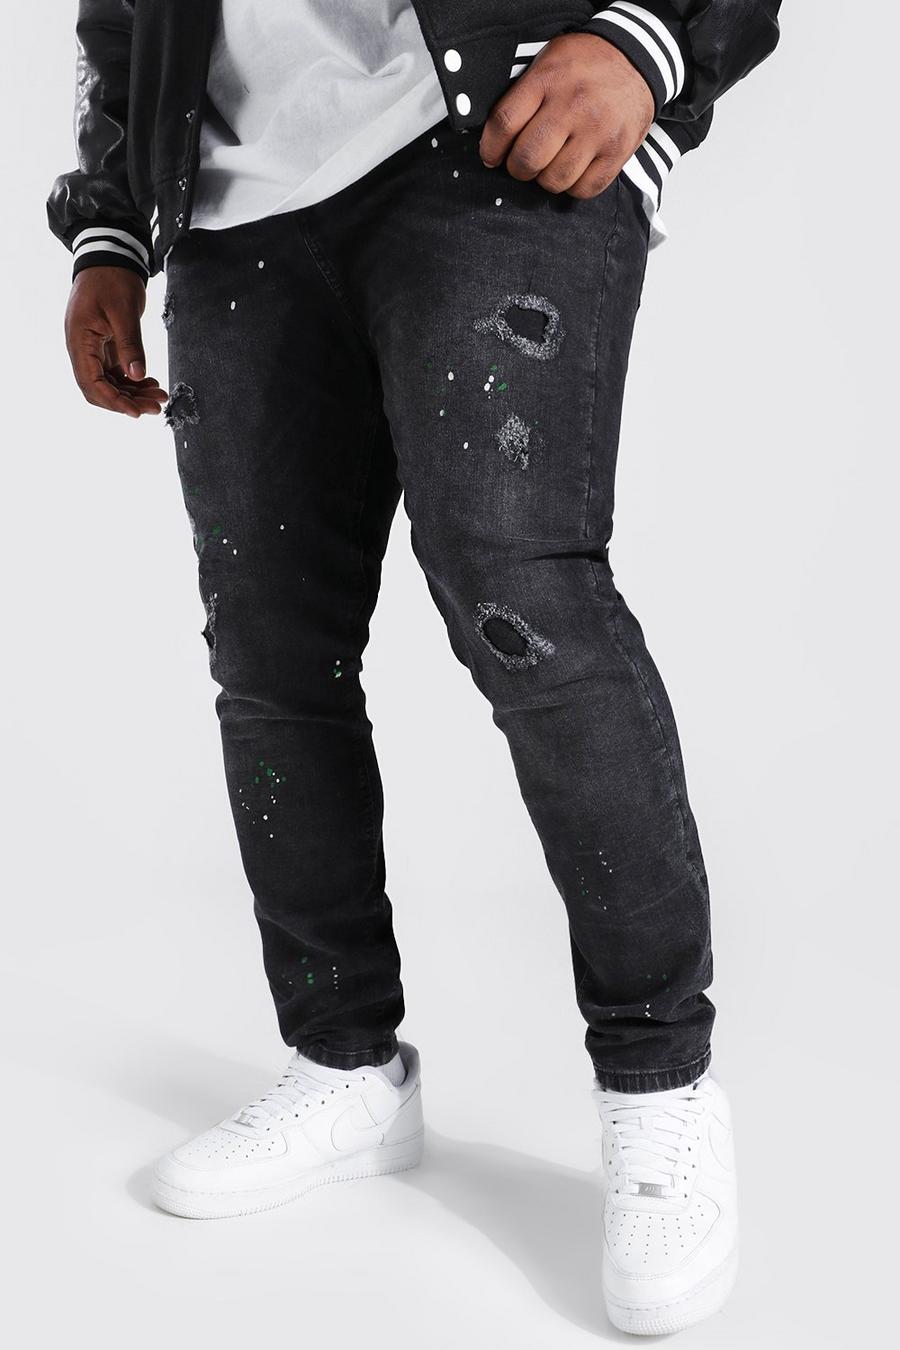 שחור דהוי סופר סקיני ג'ינס עם כתמי צבע למידות גדולות image number 1